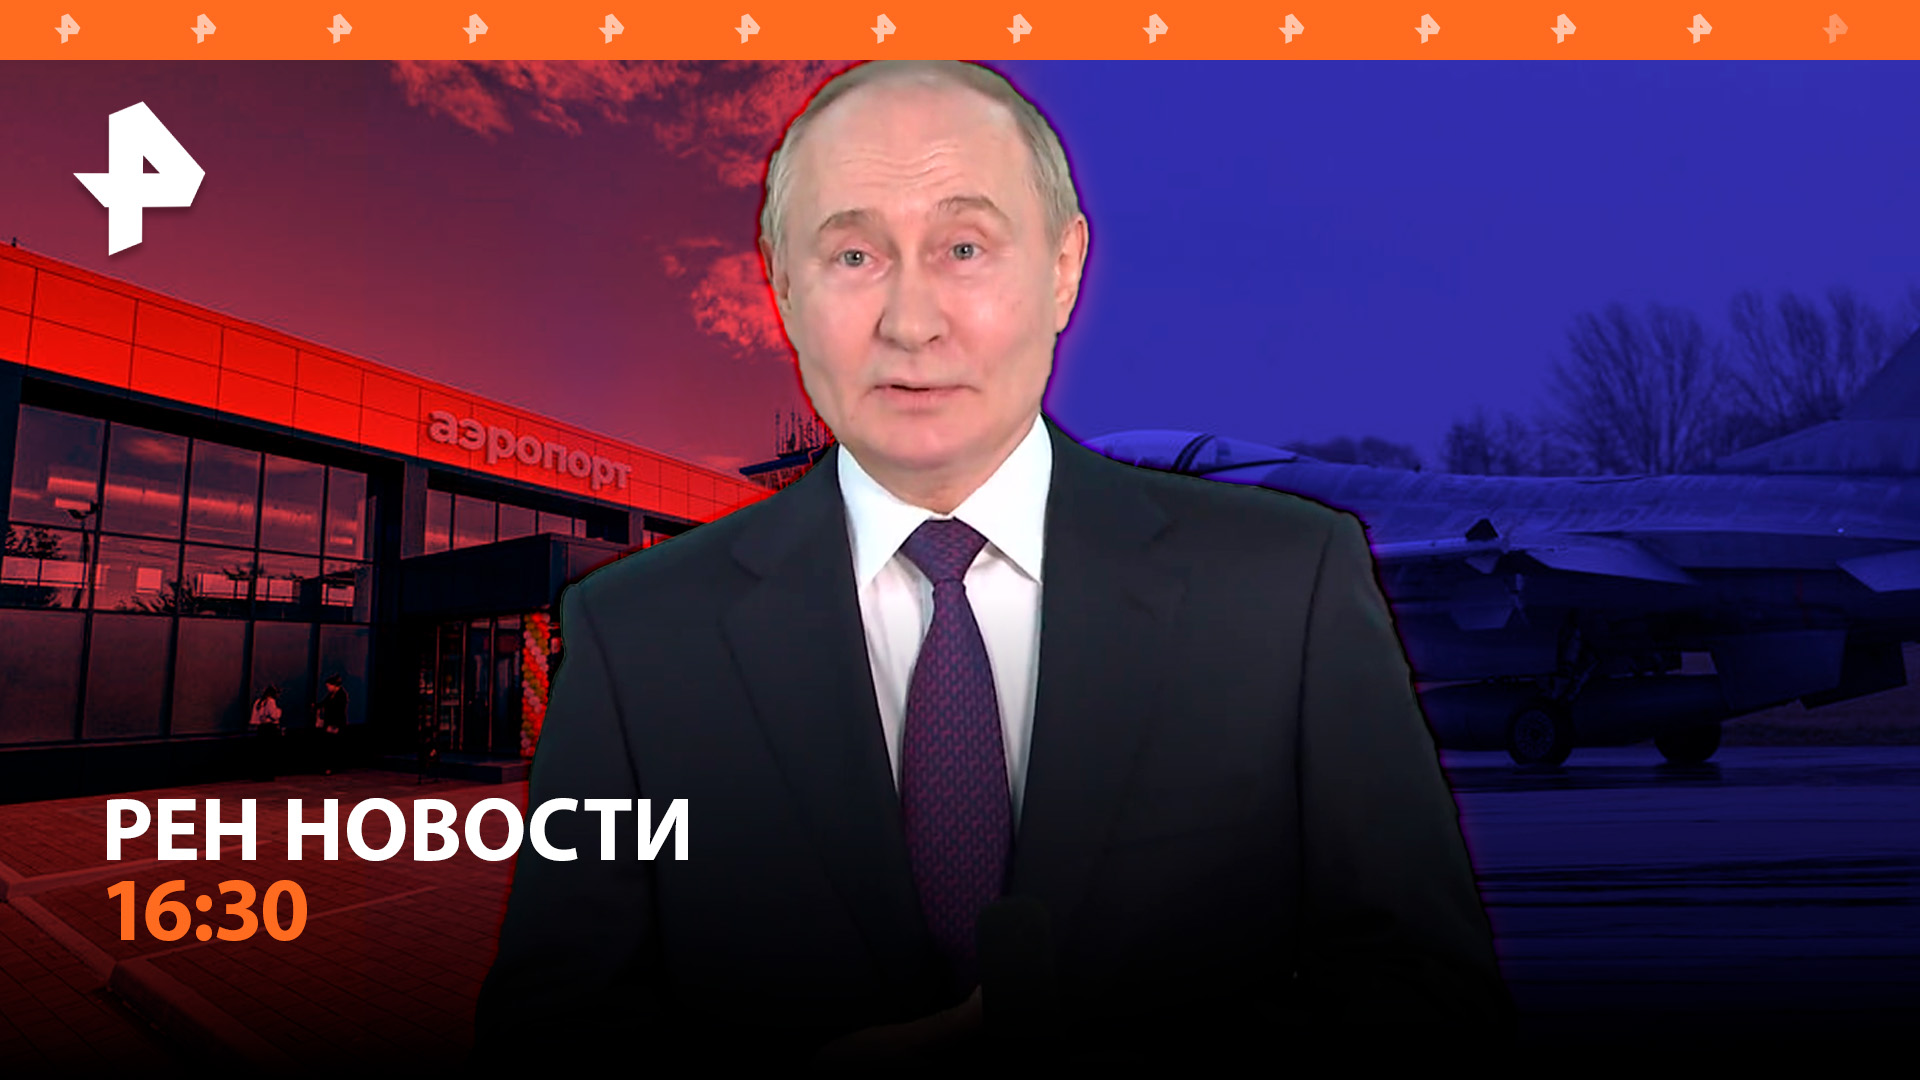 Путин в Ташкенте: главное / Бельгийские F16 для ВСУ / Самолеты в Элисте / РЕН Новости 16:30